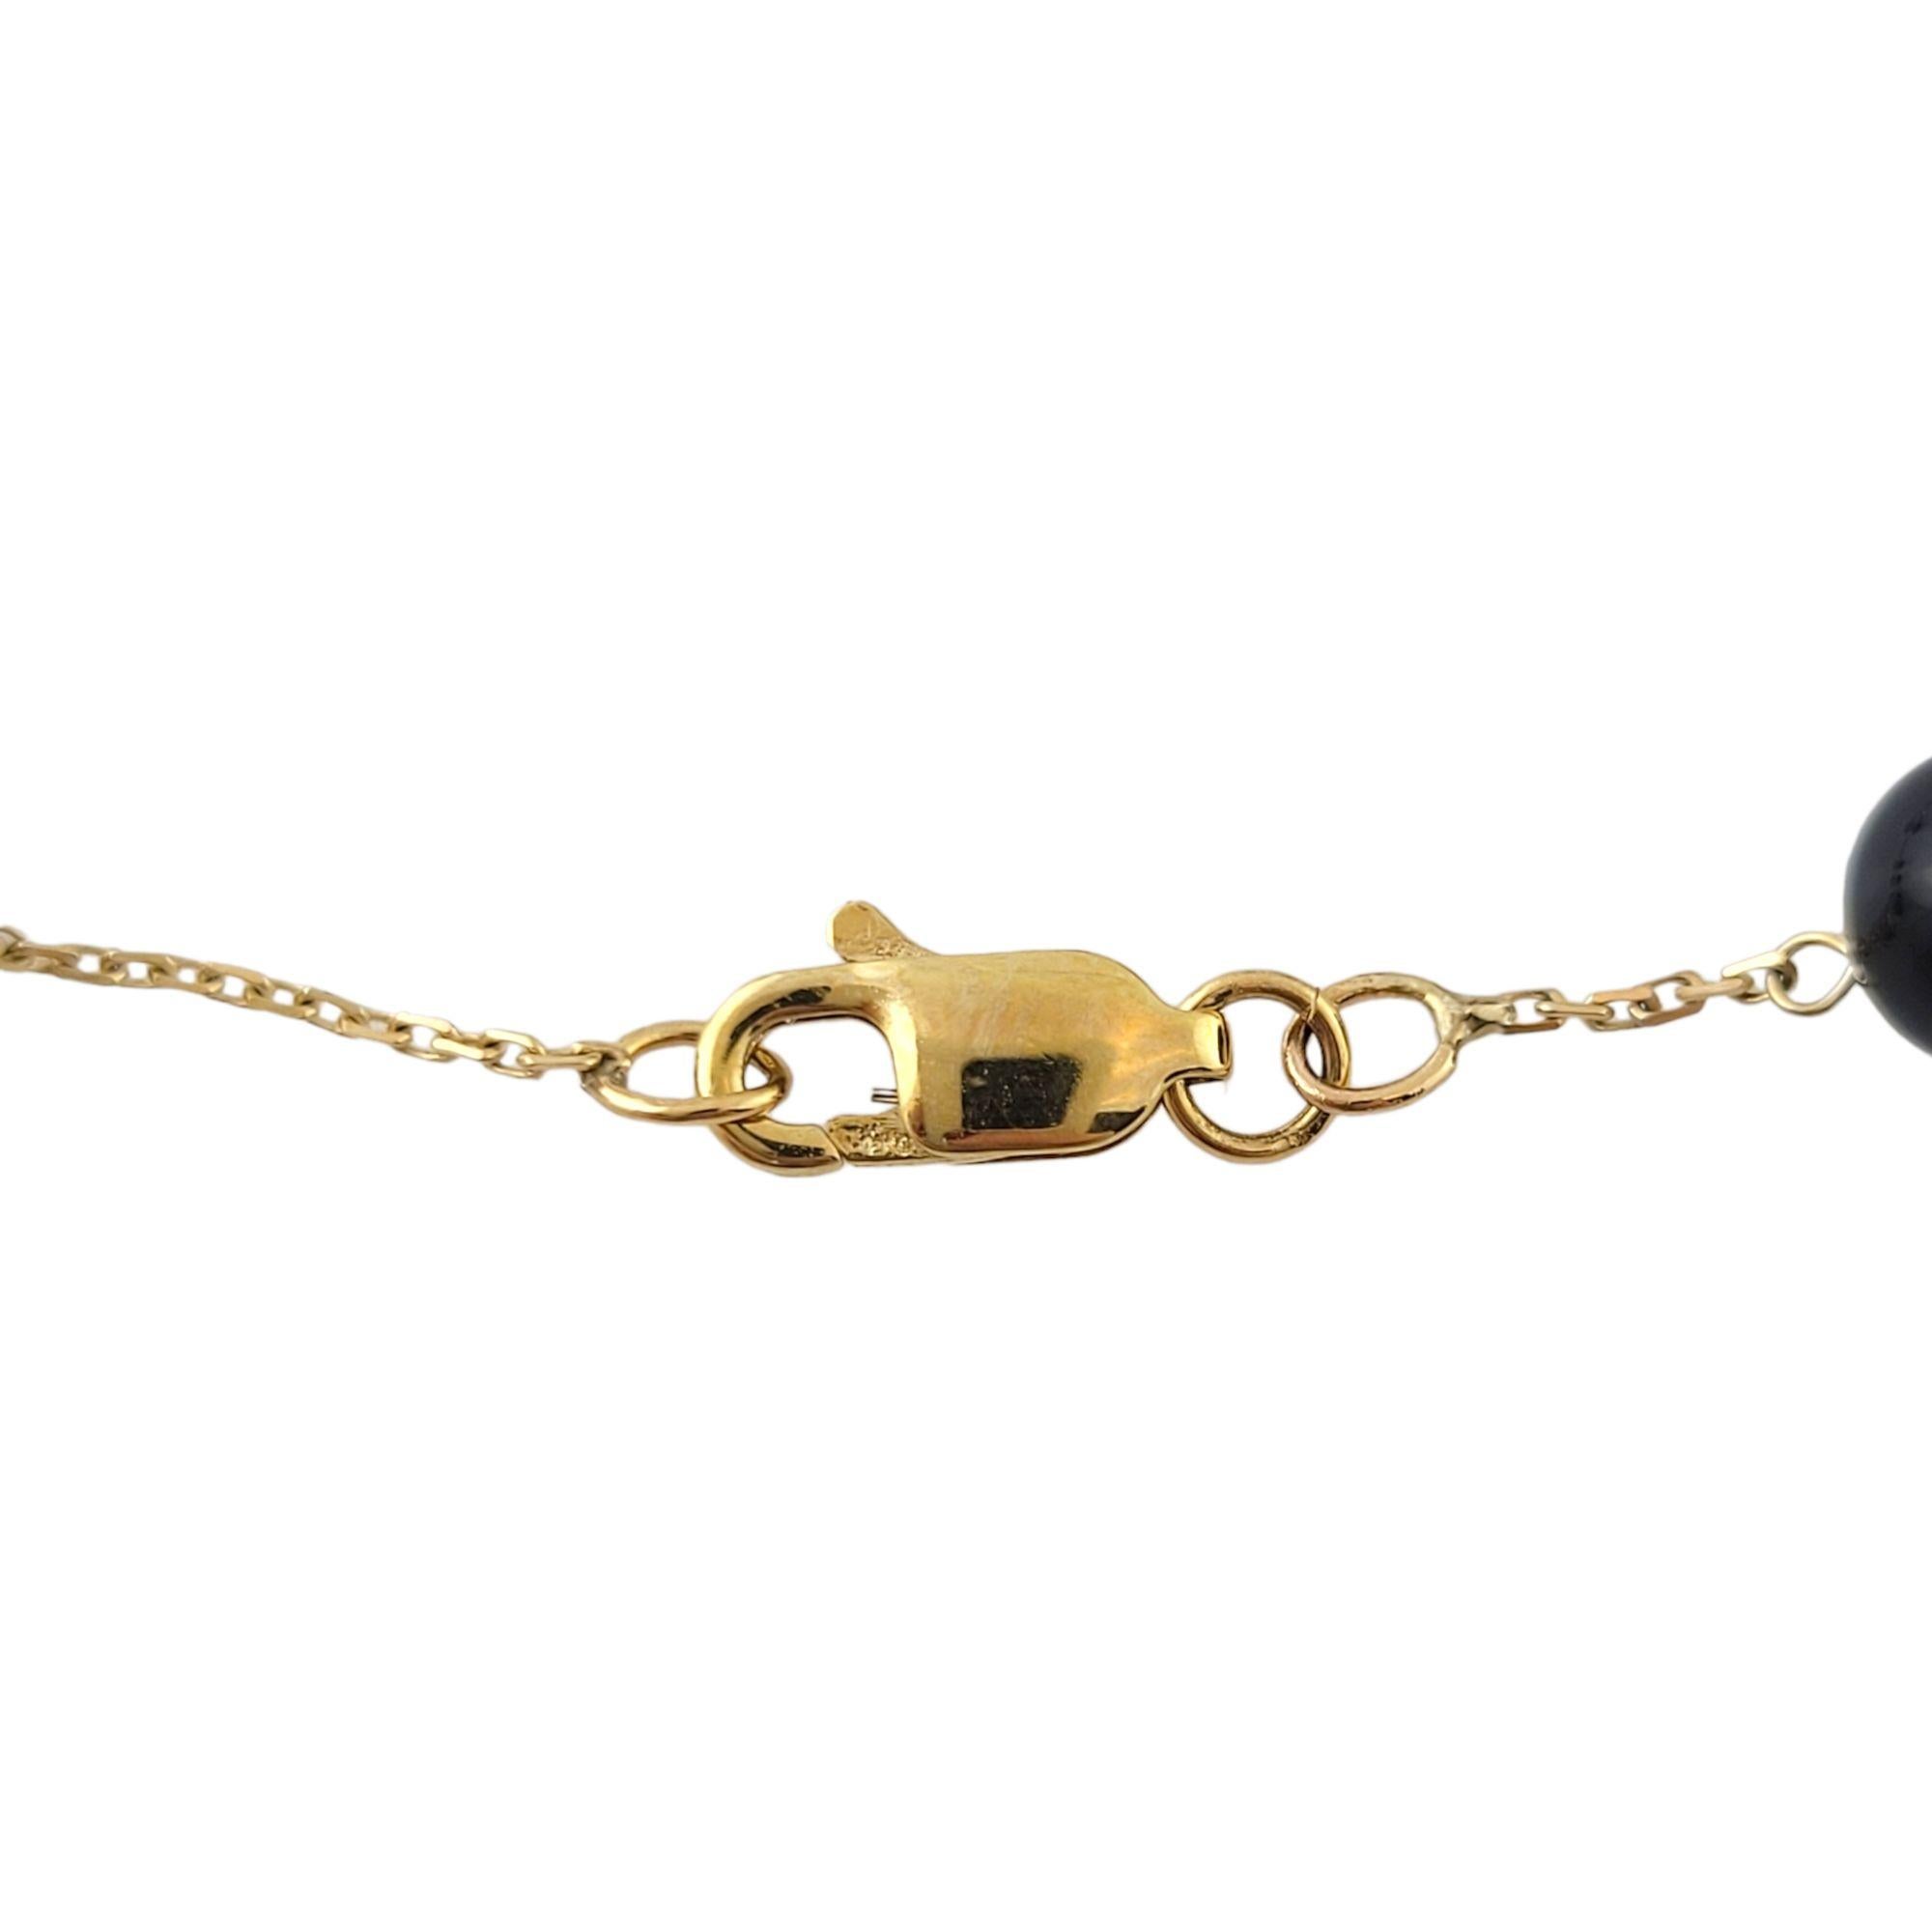 Vintage Collier en or jaune 14K avec chaîne et onyx noir

12 magnifiques perles d'onyx noir sur une chaîne en or jaune 14K !

Longueur de la chaîne : 14 1/4